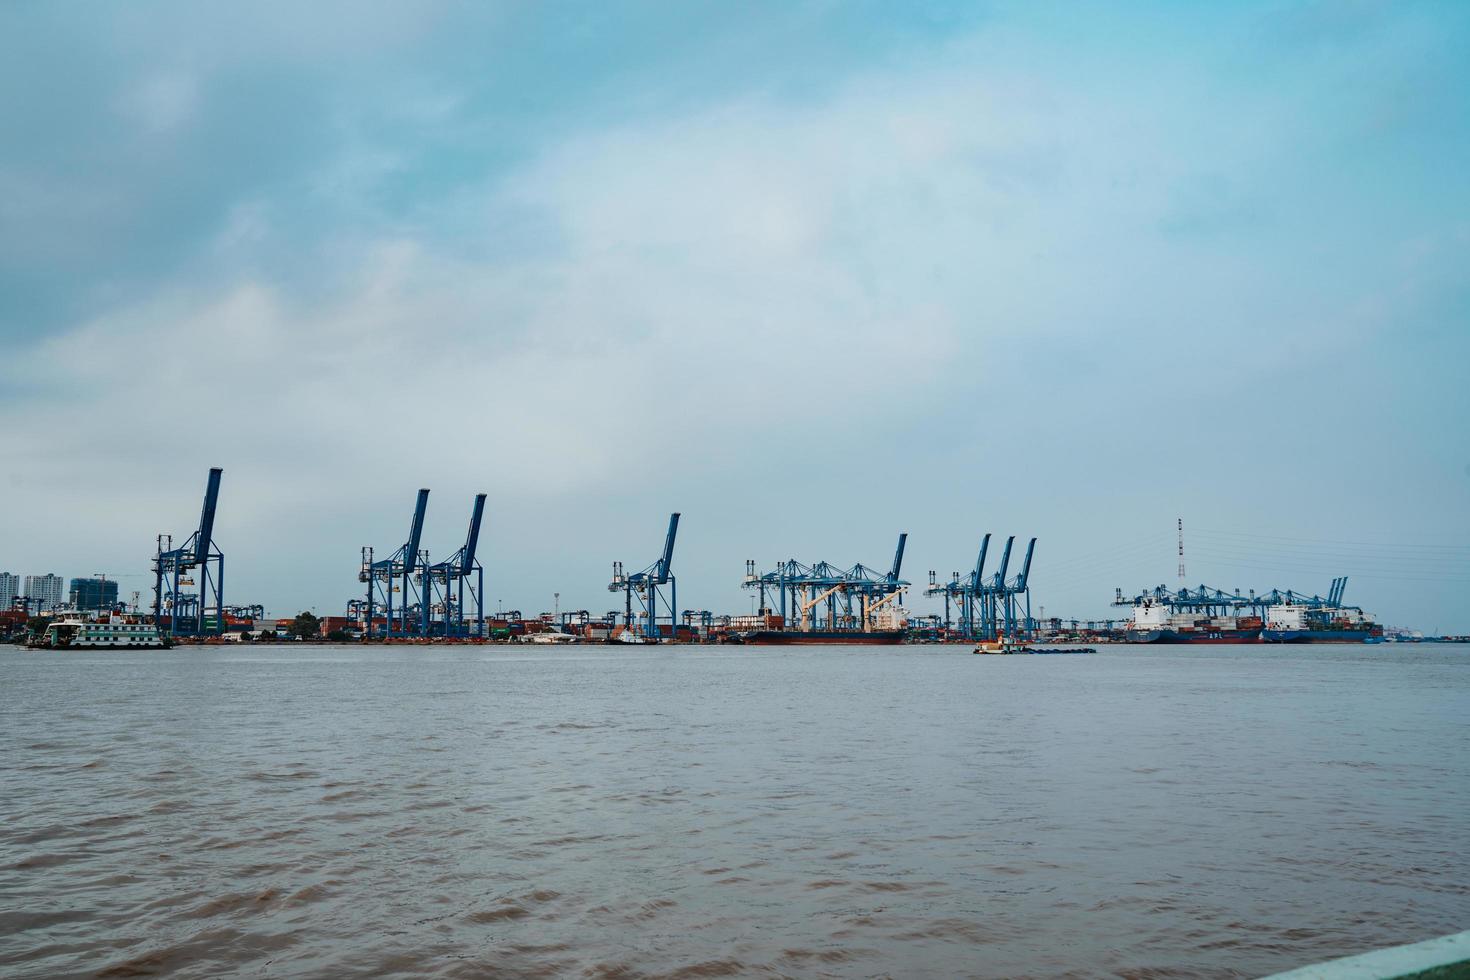 ho chi minh, vietnam - 19 februari 2022 transport voor export, import in cat lai port aan de sai gon-rivier, kraanlaadcontainer naar boot, deze haven is een grote industriële service voor handel foto